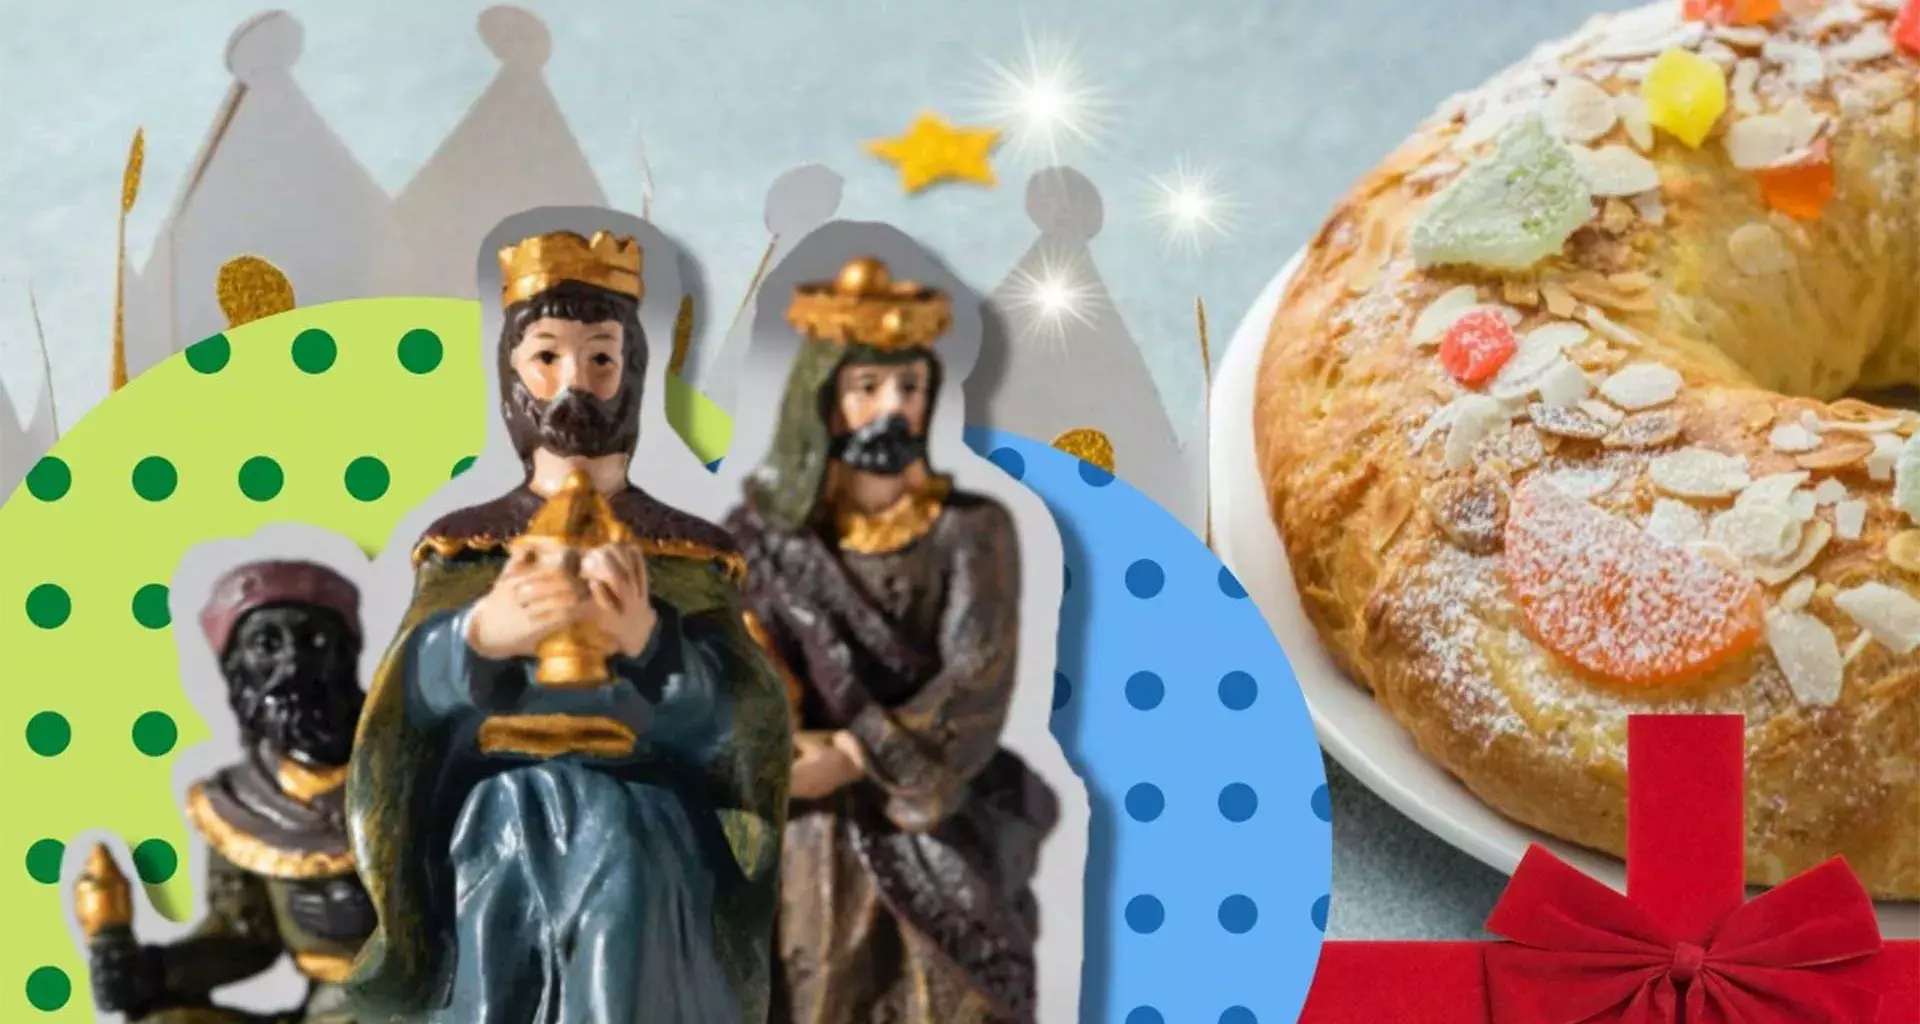 Día de Reyes, una tradición con muchos significados